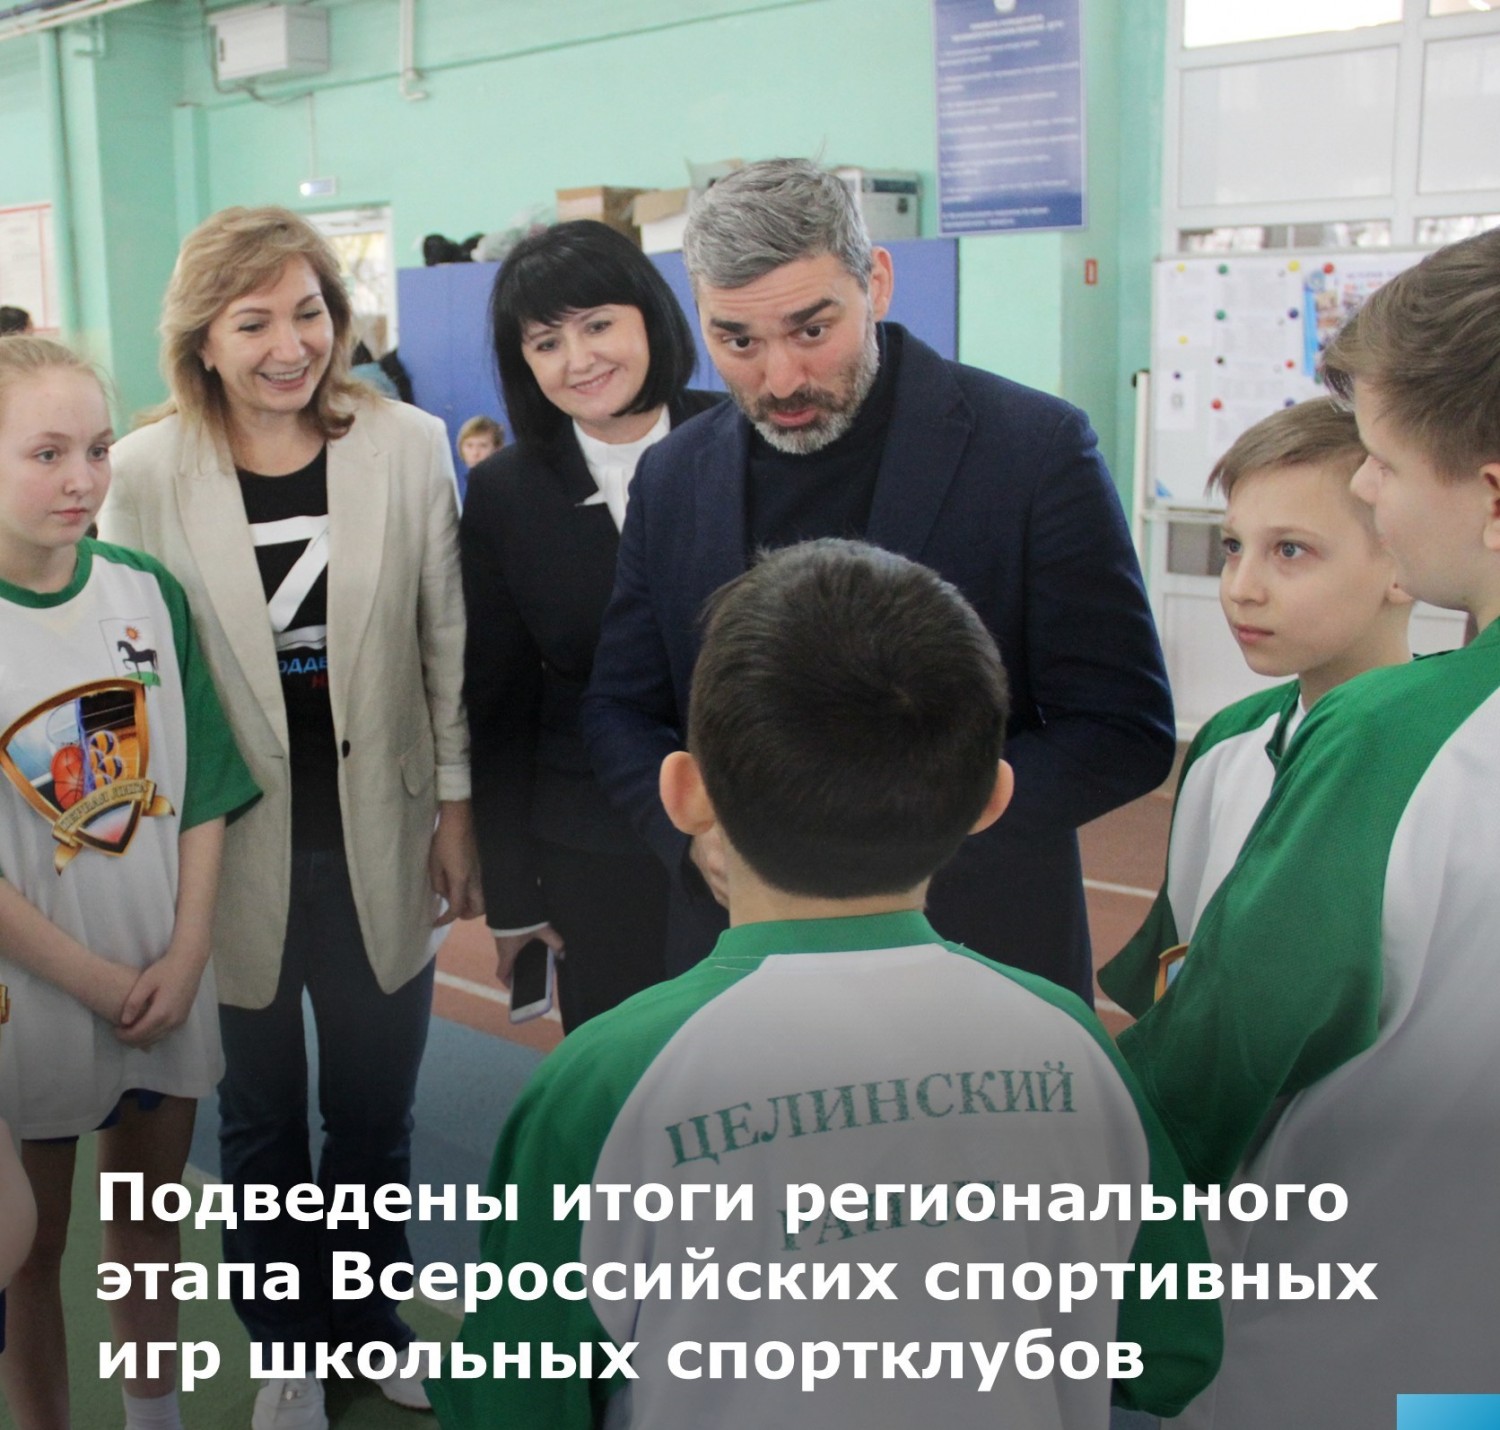 Подведены итоги регионального этапа Всероссийских спортивных игр школьных спортклубов